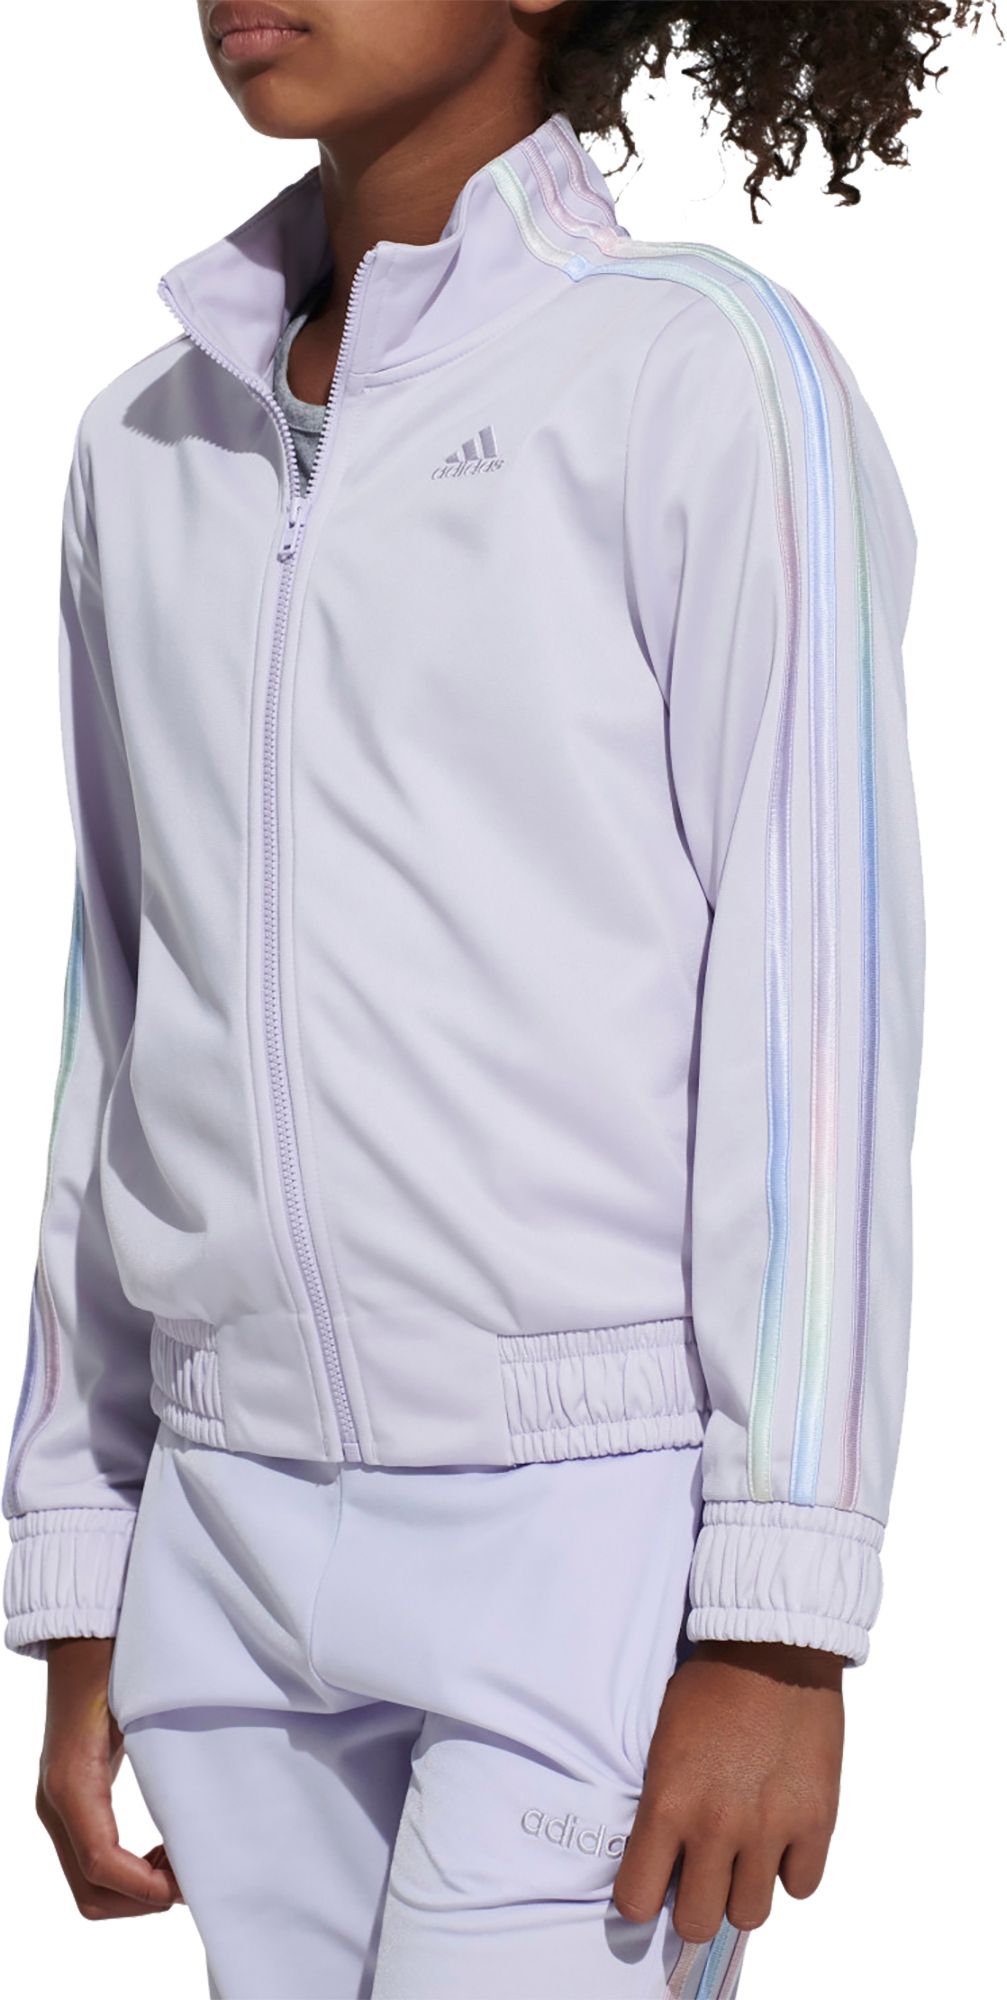 light purple adidas jacket